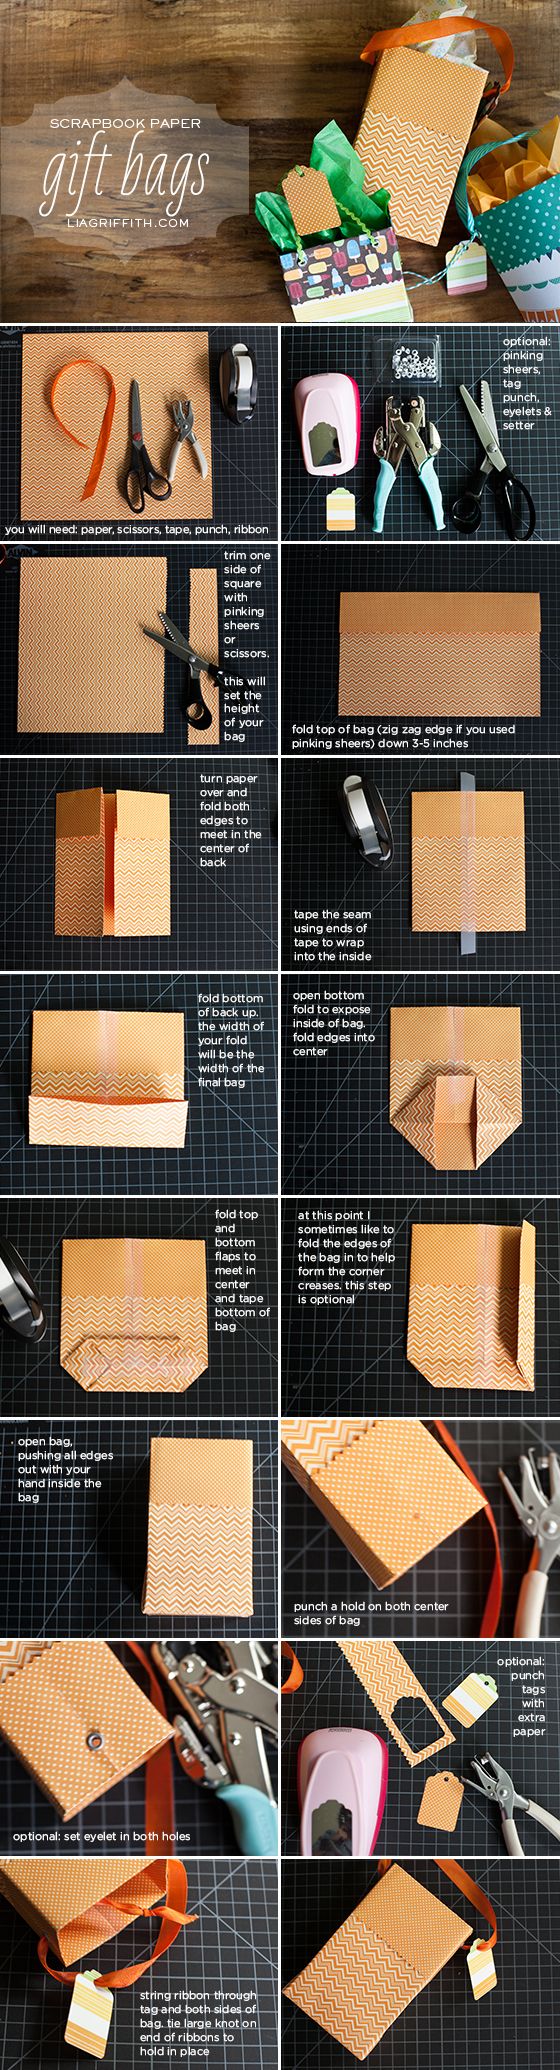 manualidades-que-puedes-hacer-con-papel